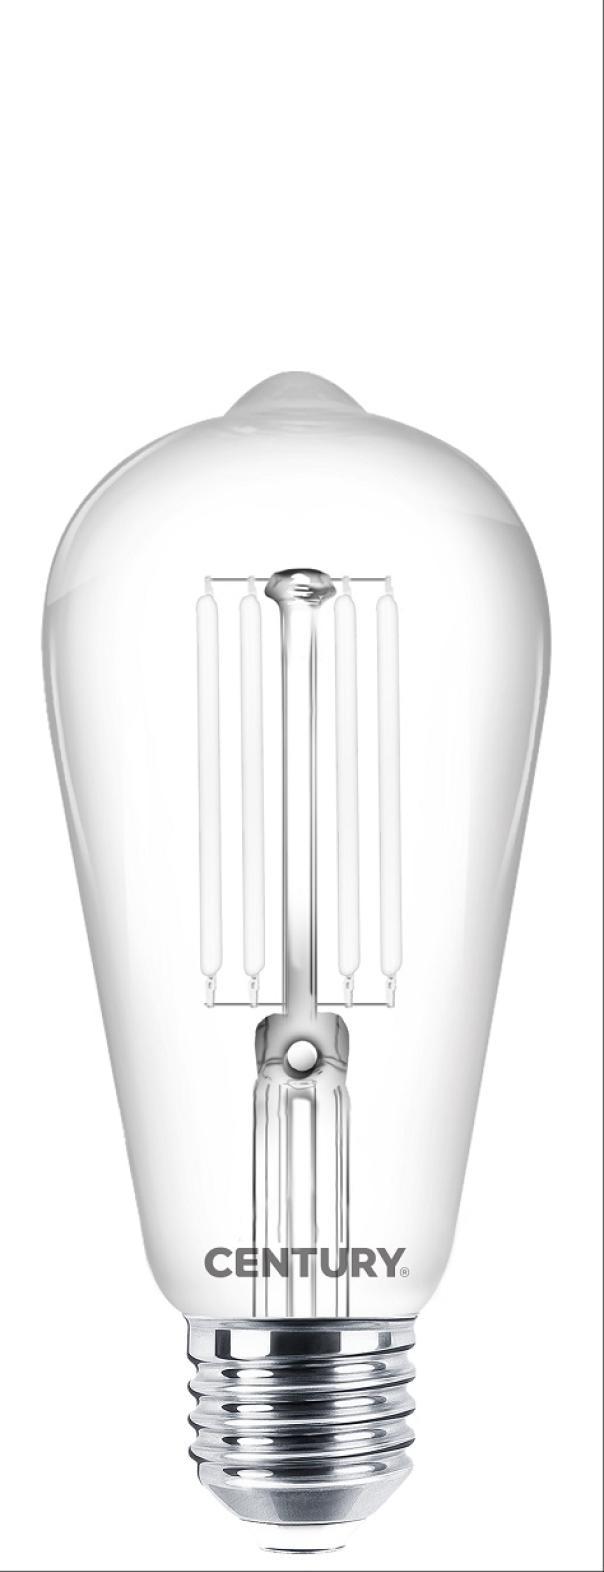 century century lampada filamento  led incanto white edison chiara 7,5w e27 2700k inpw-752727